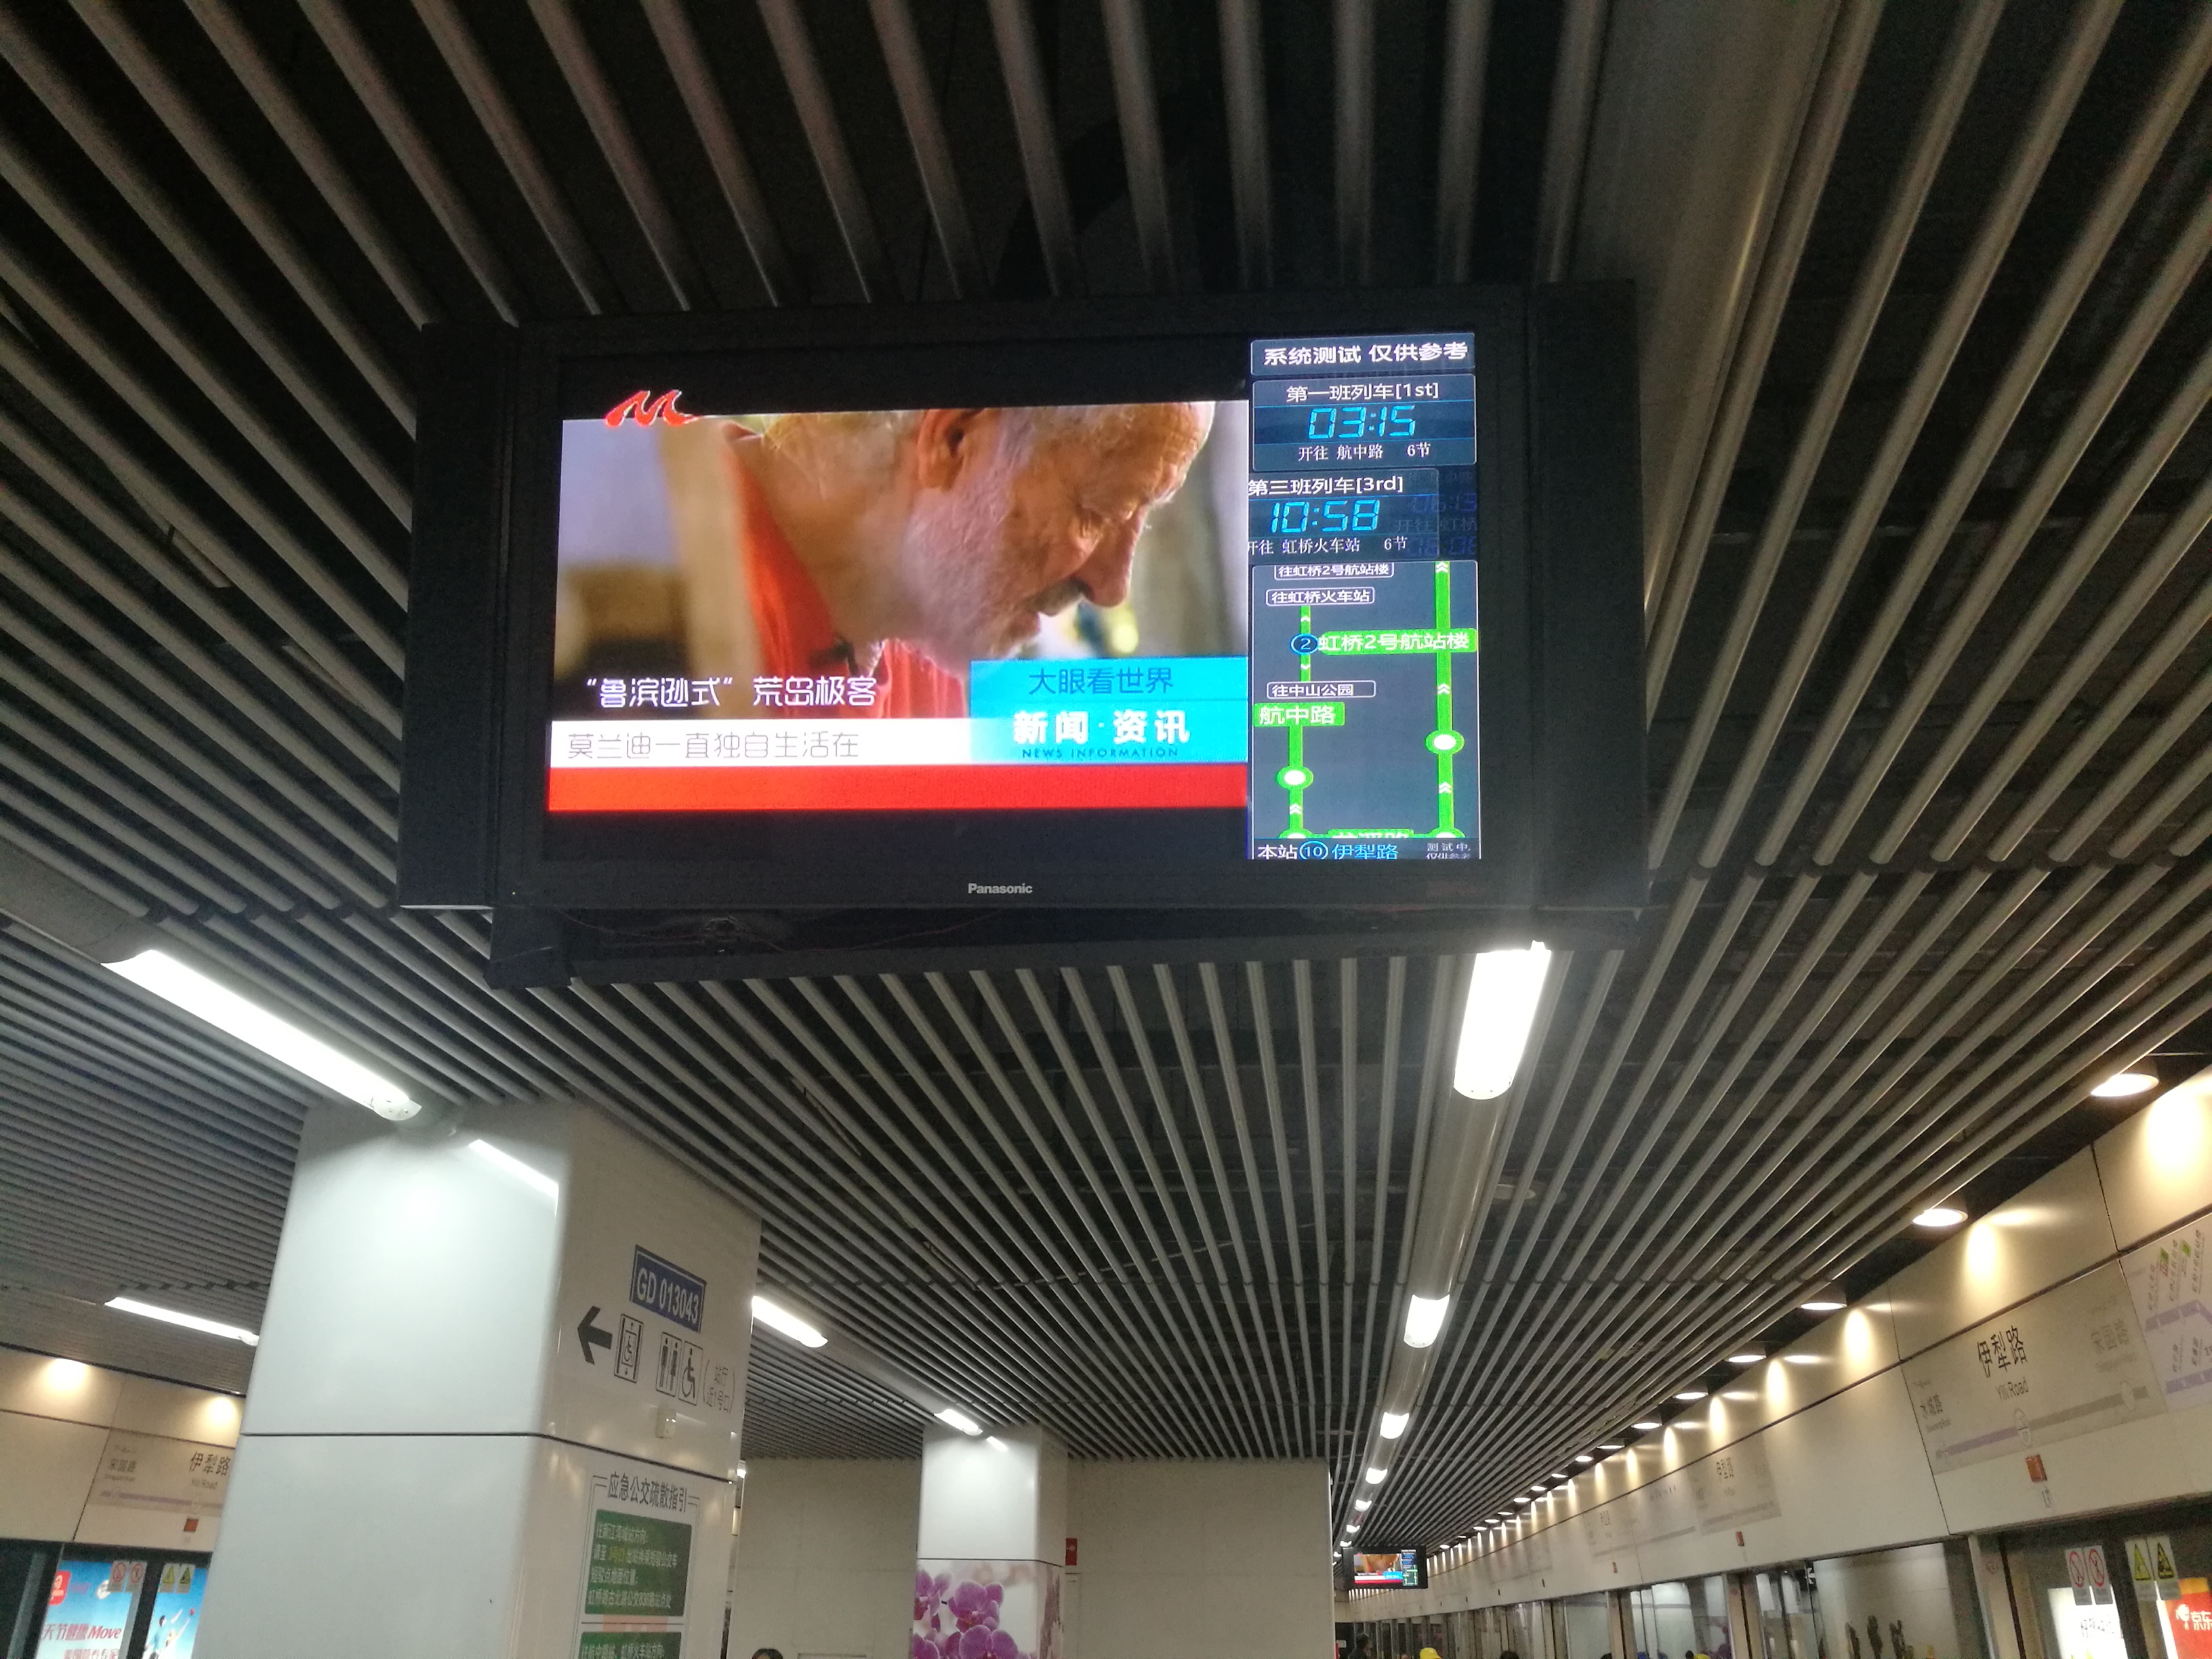 解析上海地铁10号线自己换乘自己问题:龙溪路站反向